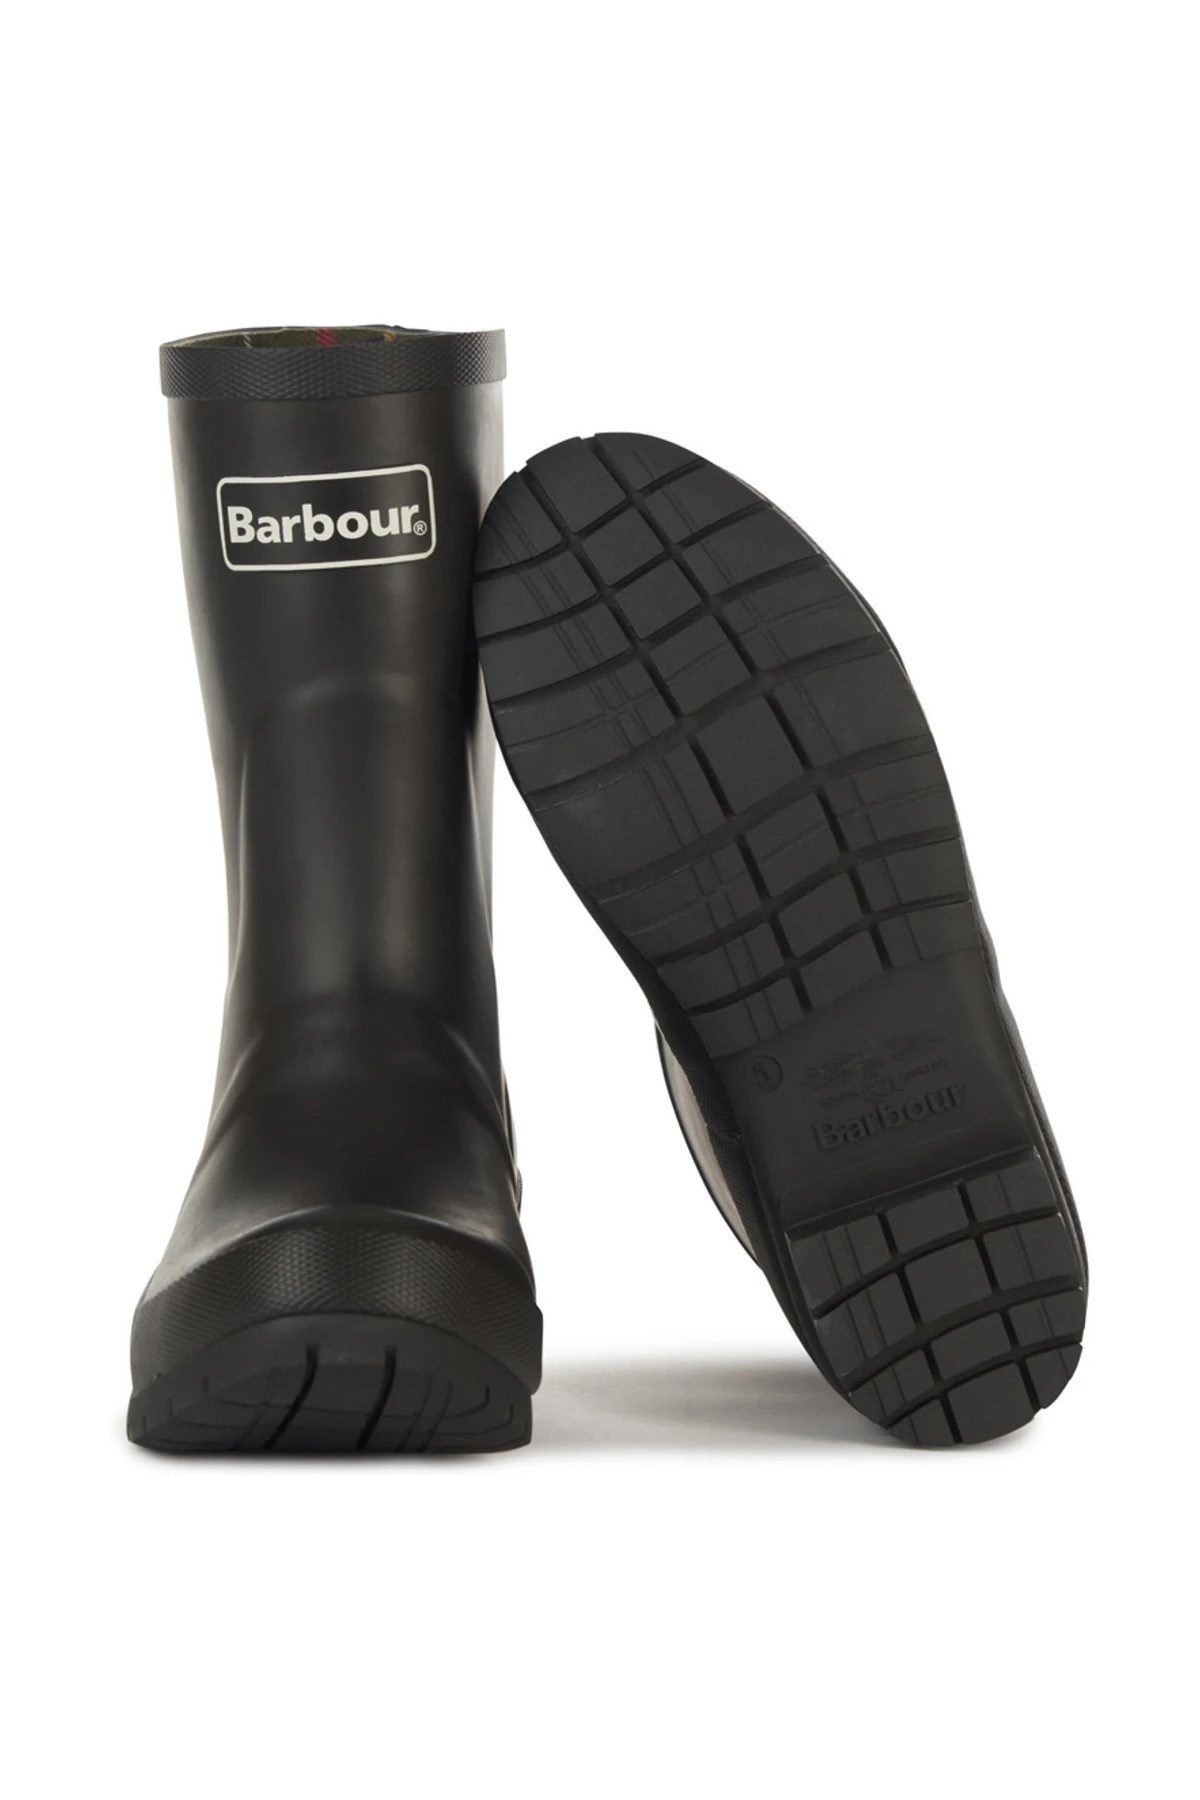 Barbour Kadın Banbury Çizme BK11 Black